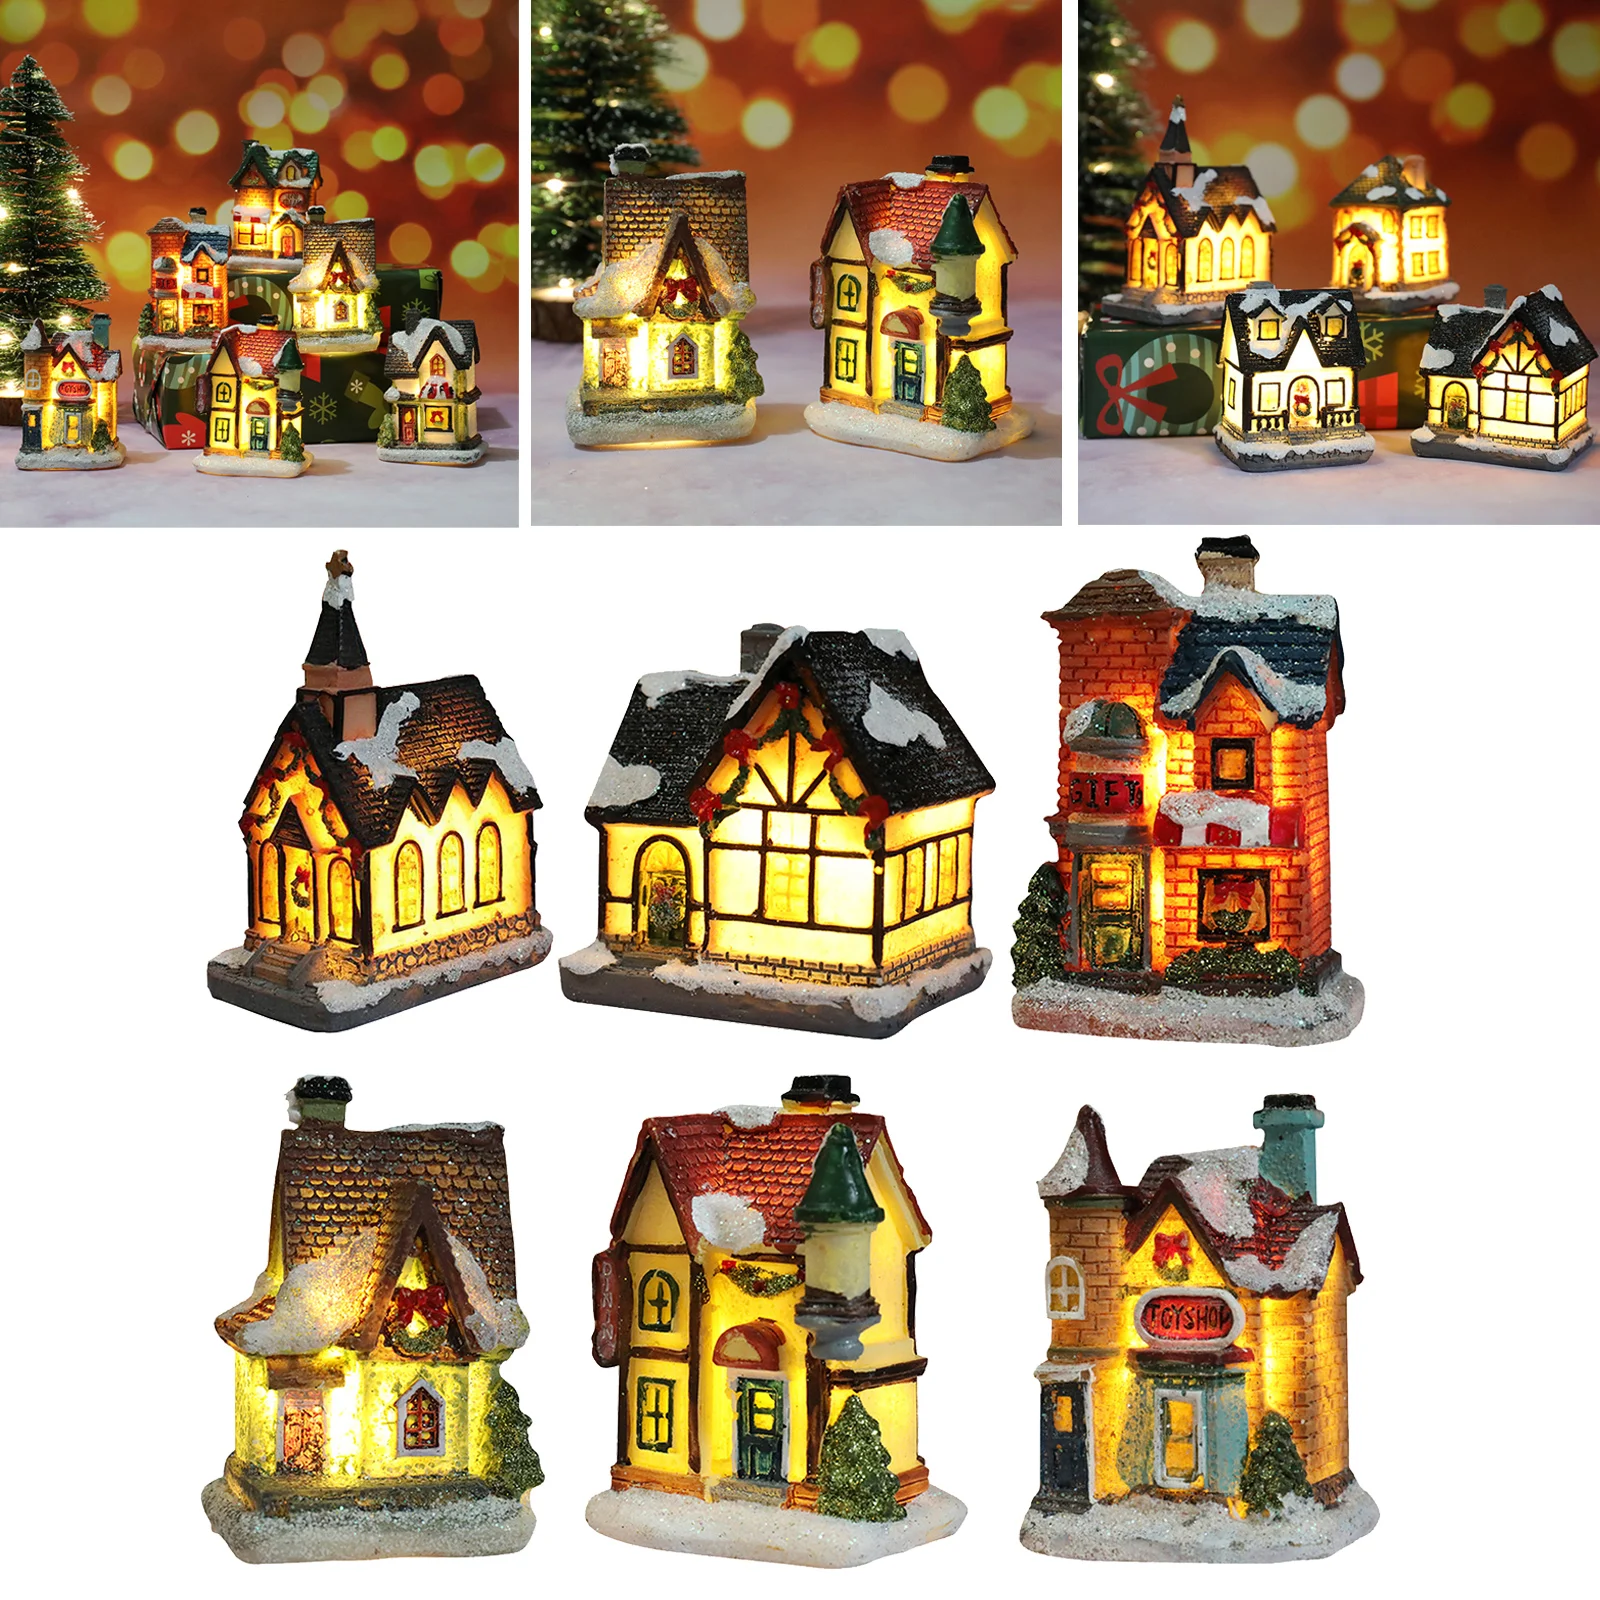 6PCS Set di ornamenti natalizi casa delle bambole villaggio illumina la casa di natale festa invernale decorazione del giardino Set regalo per bambini